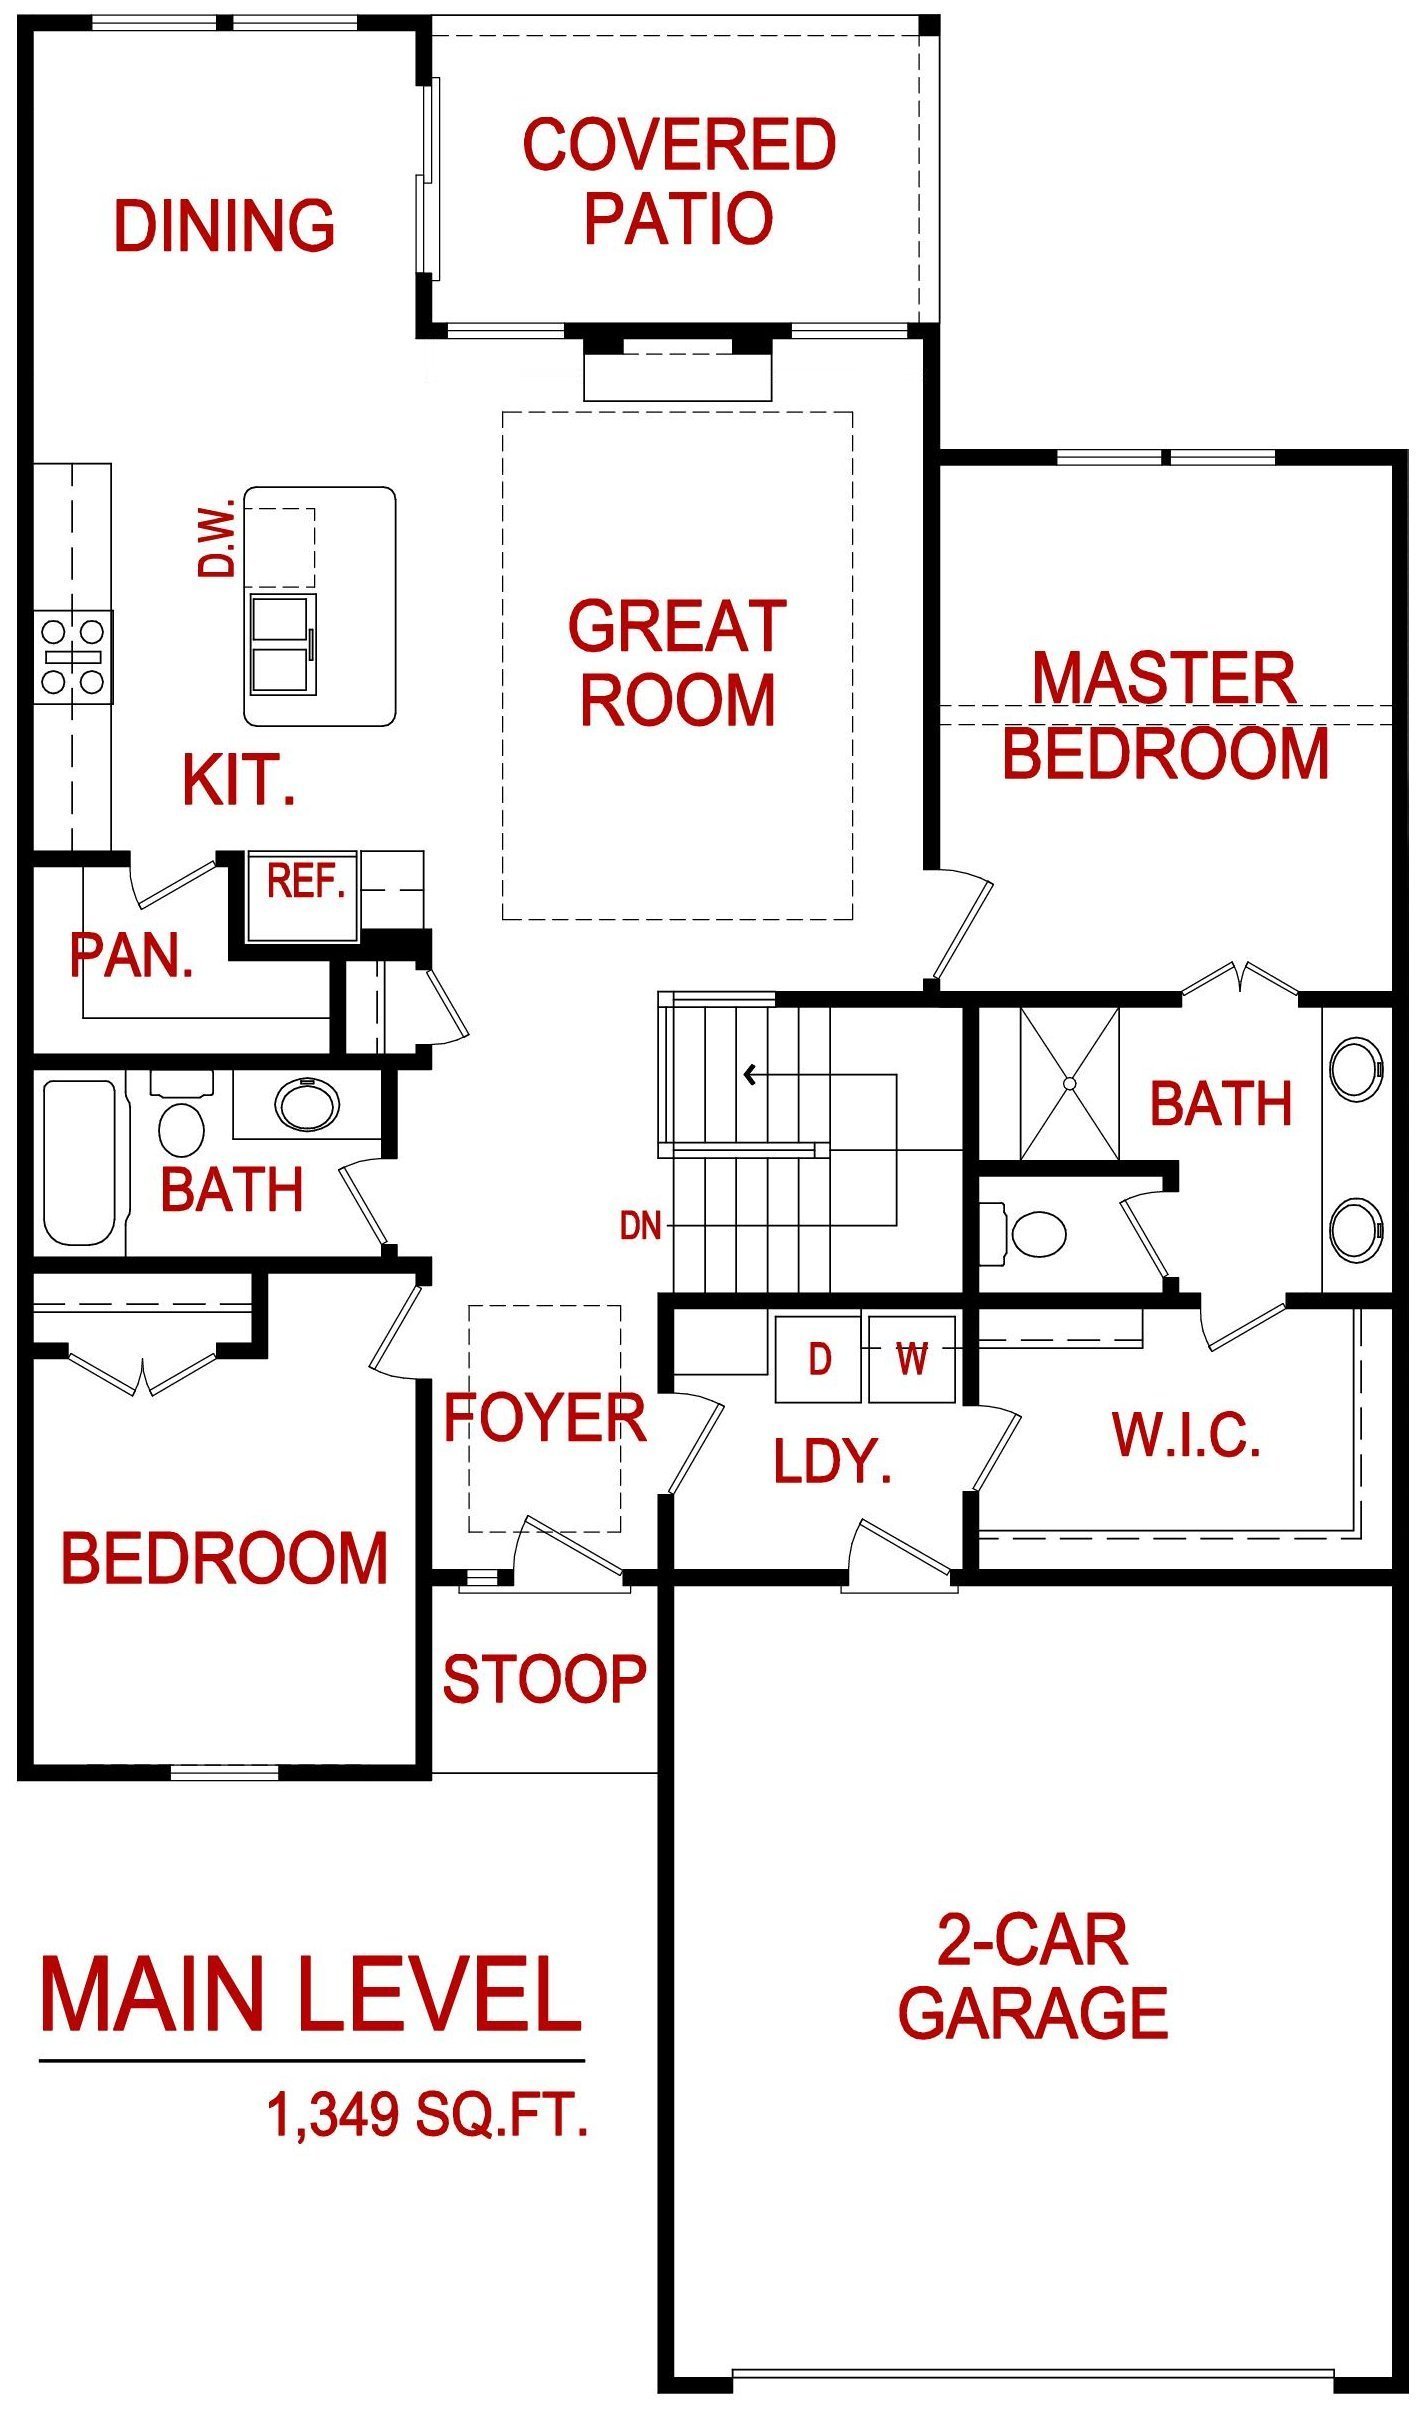 Lakewood villa floor plan from lambie homes